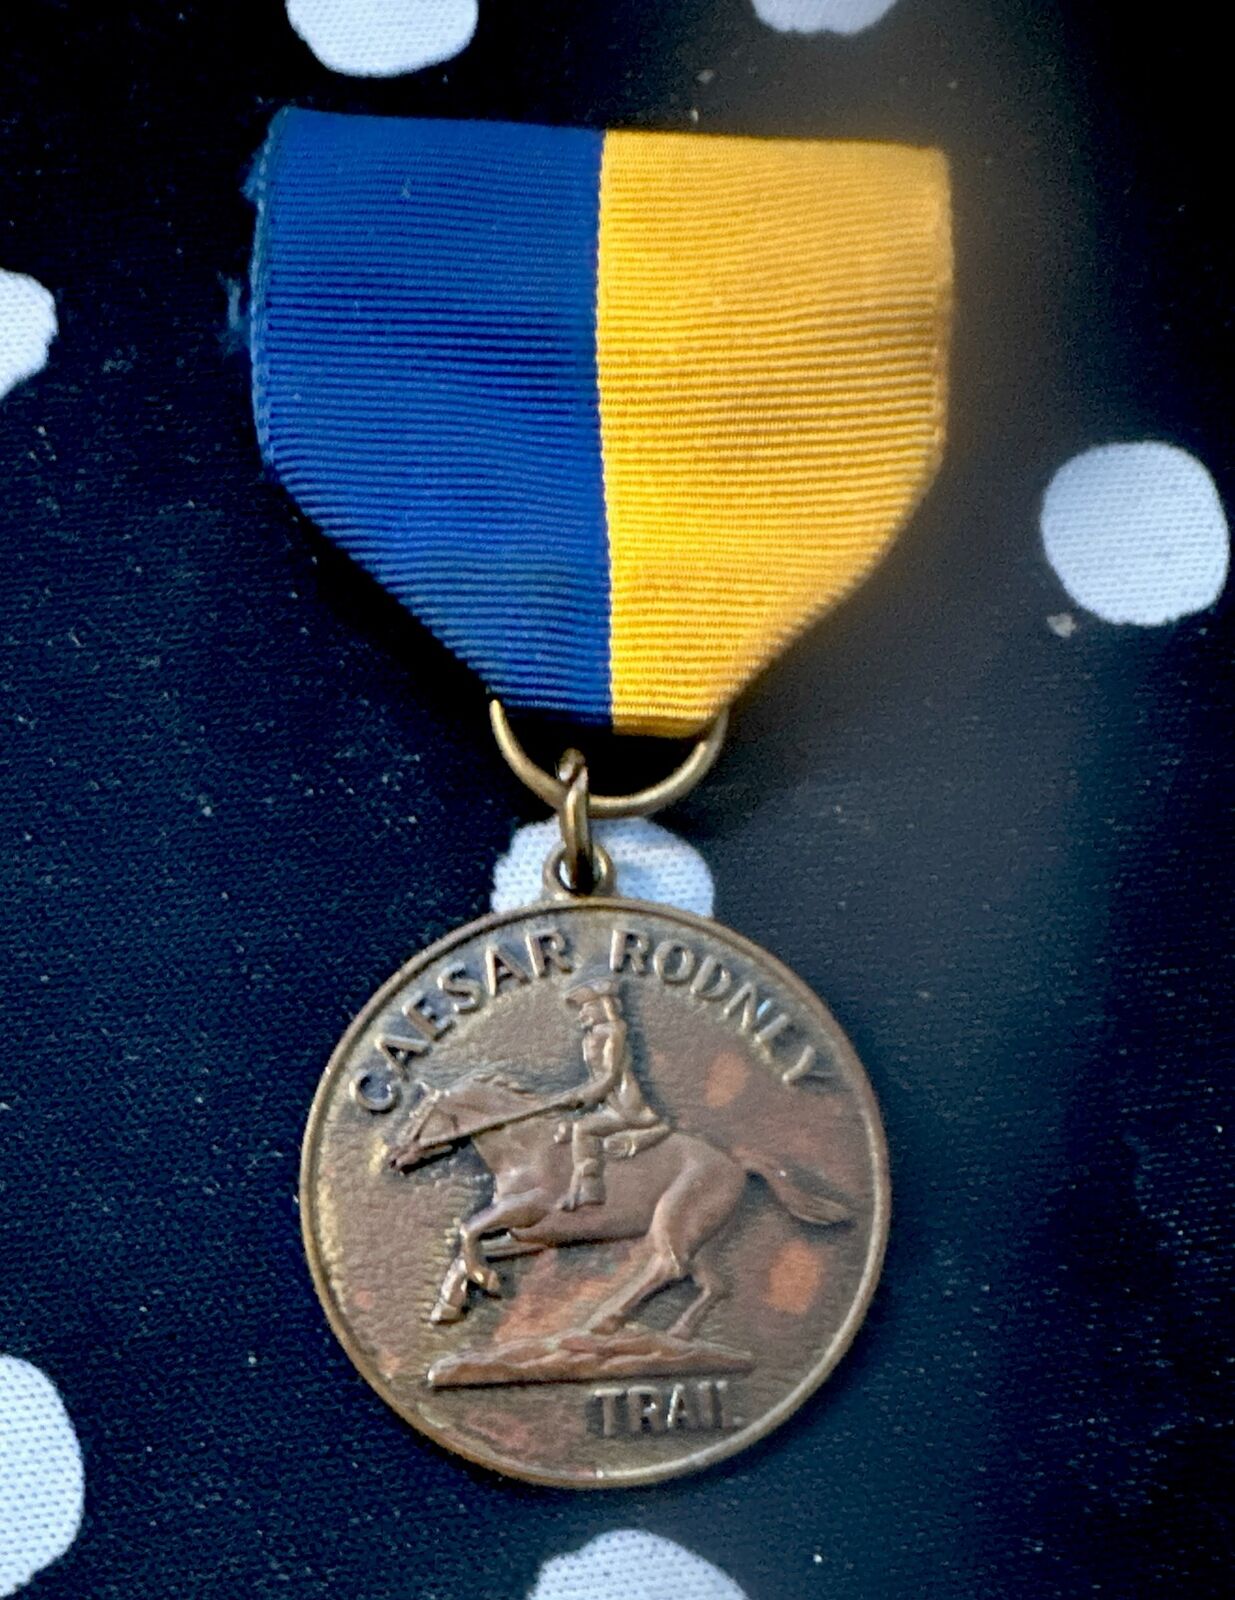 Rare Caesar Rodney Delaware Del-Mar-Va Council Trail medal BSA Boy Scouts 1970s